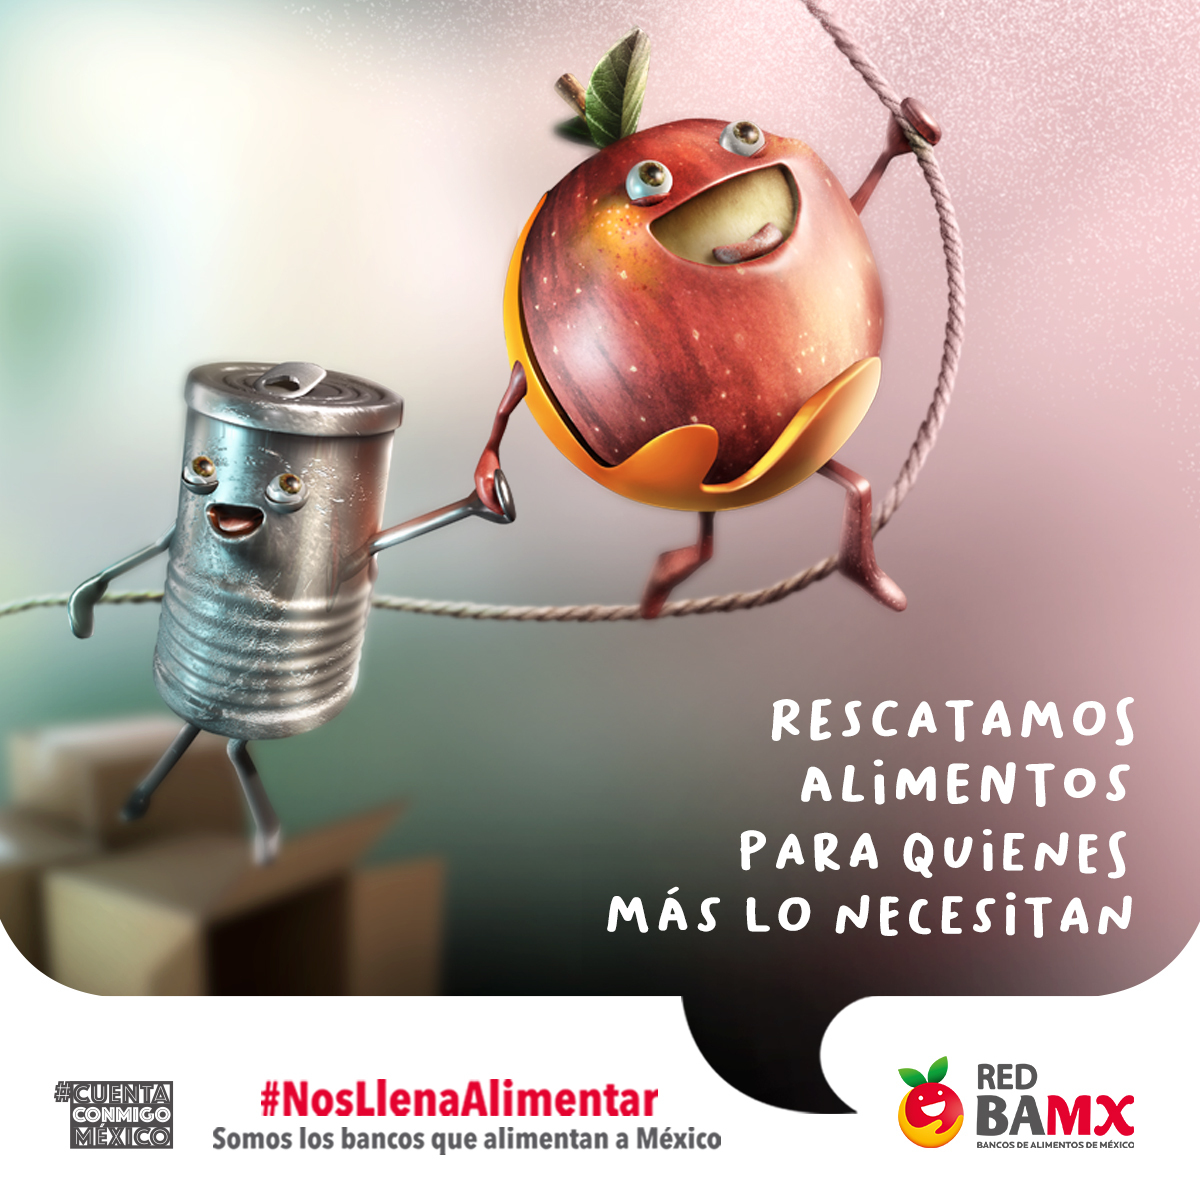 ¿Sabías que en México existen 28 millones de personas en carencia alimentaria? En la #RedBAMX rescatamos, seleccionamos y distribuimos alimento para eliminar el hambre en México. ¡Somos los Bancos que Alimentan a México! #NosLlenaAlimentar #AyudaQueLlega #AlimentamosaMexico